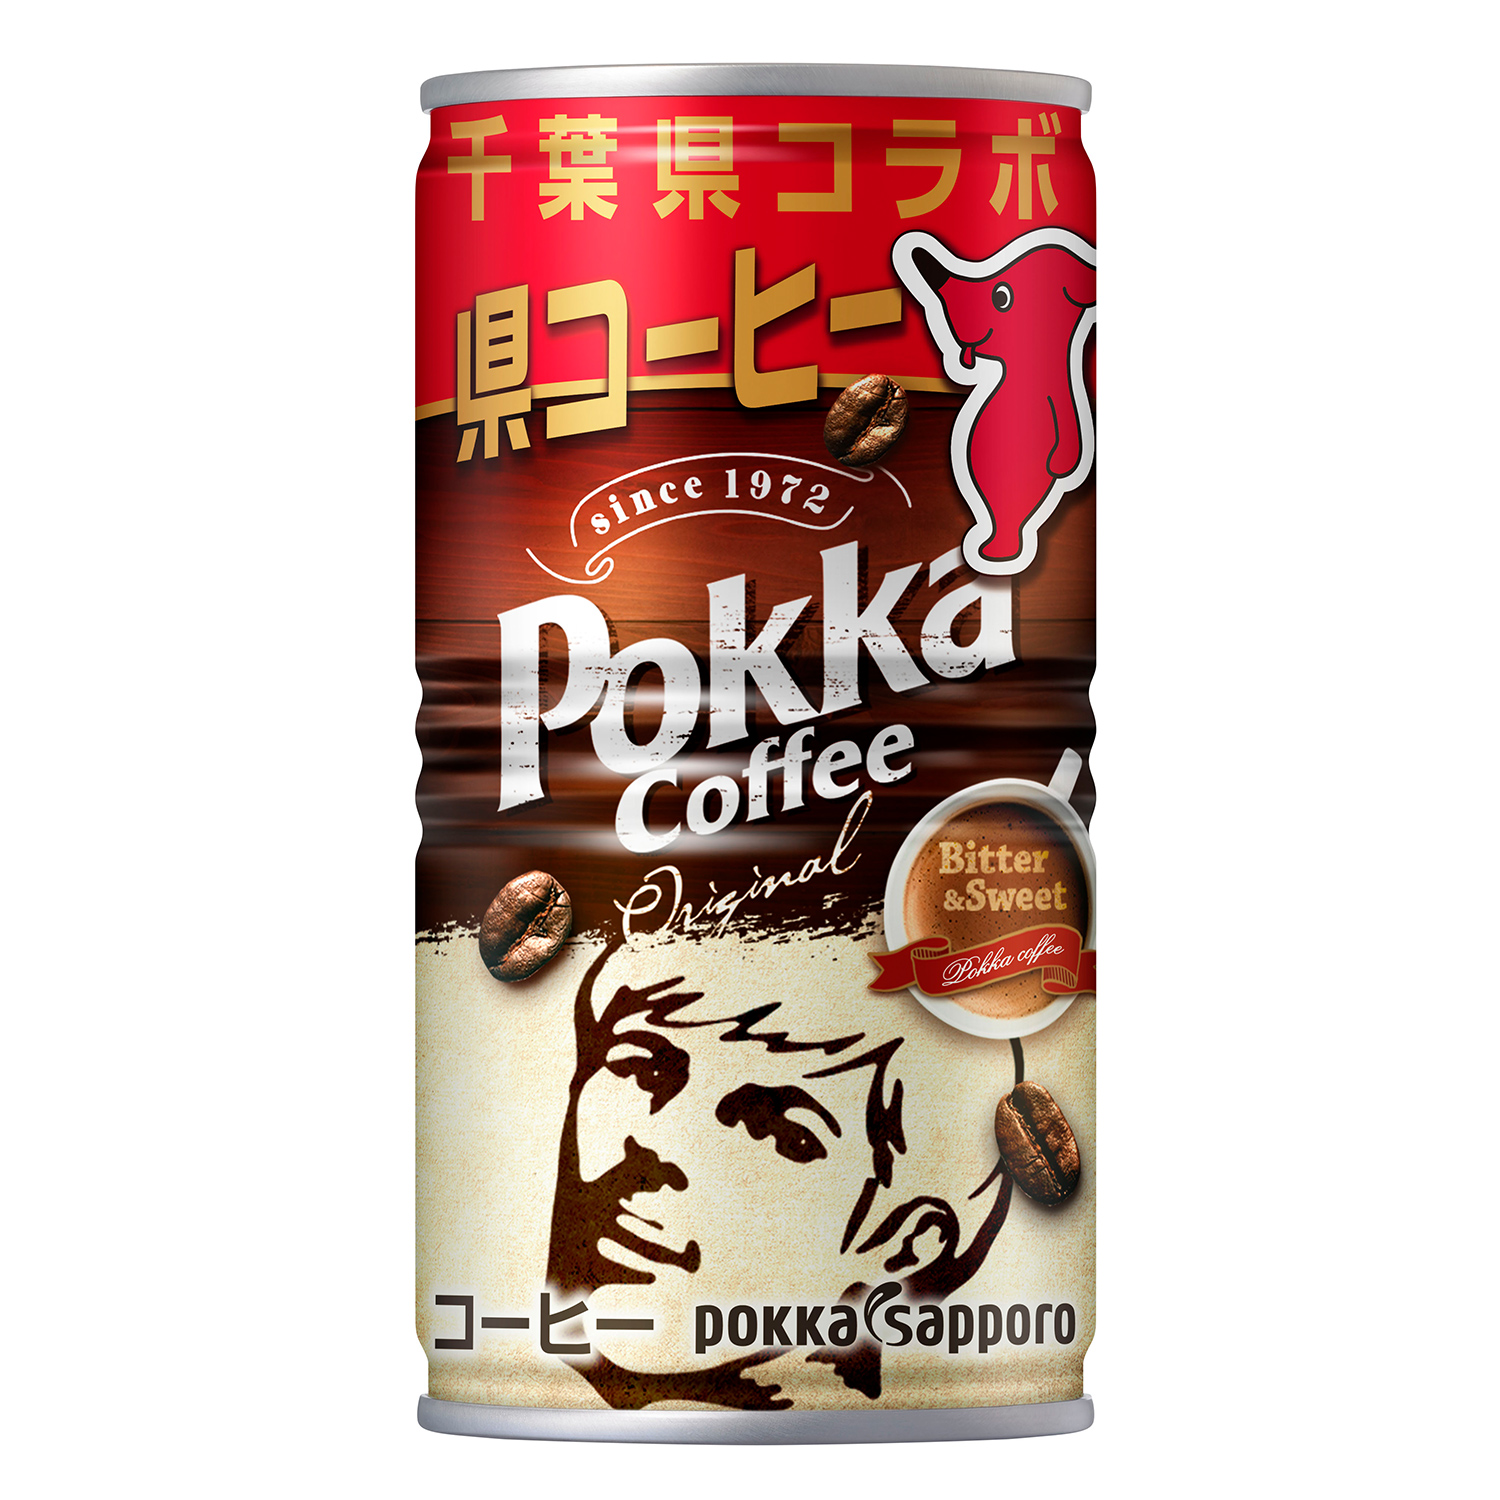 缶コーヒー"から千葉県コラボ“県コーヒー"へ! 恩返しとして売上の一部